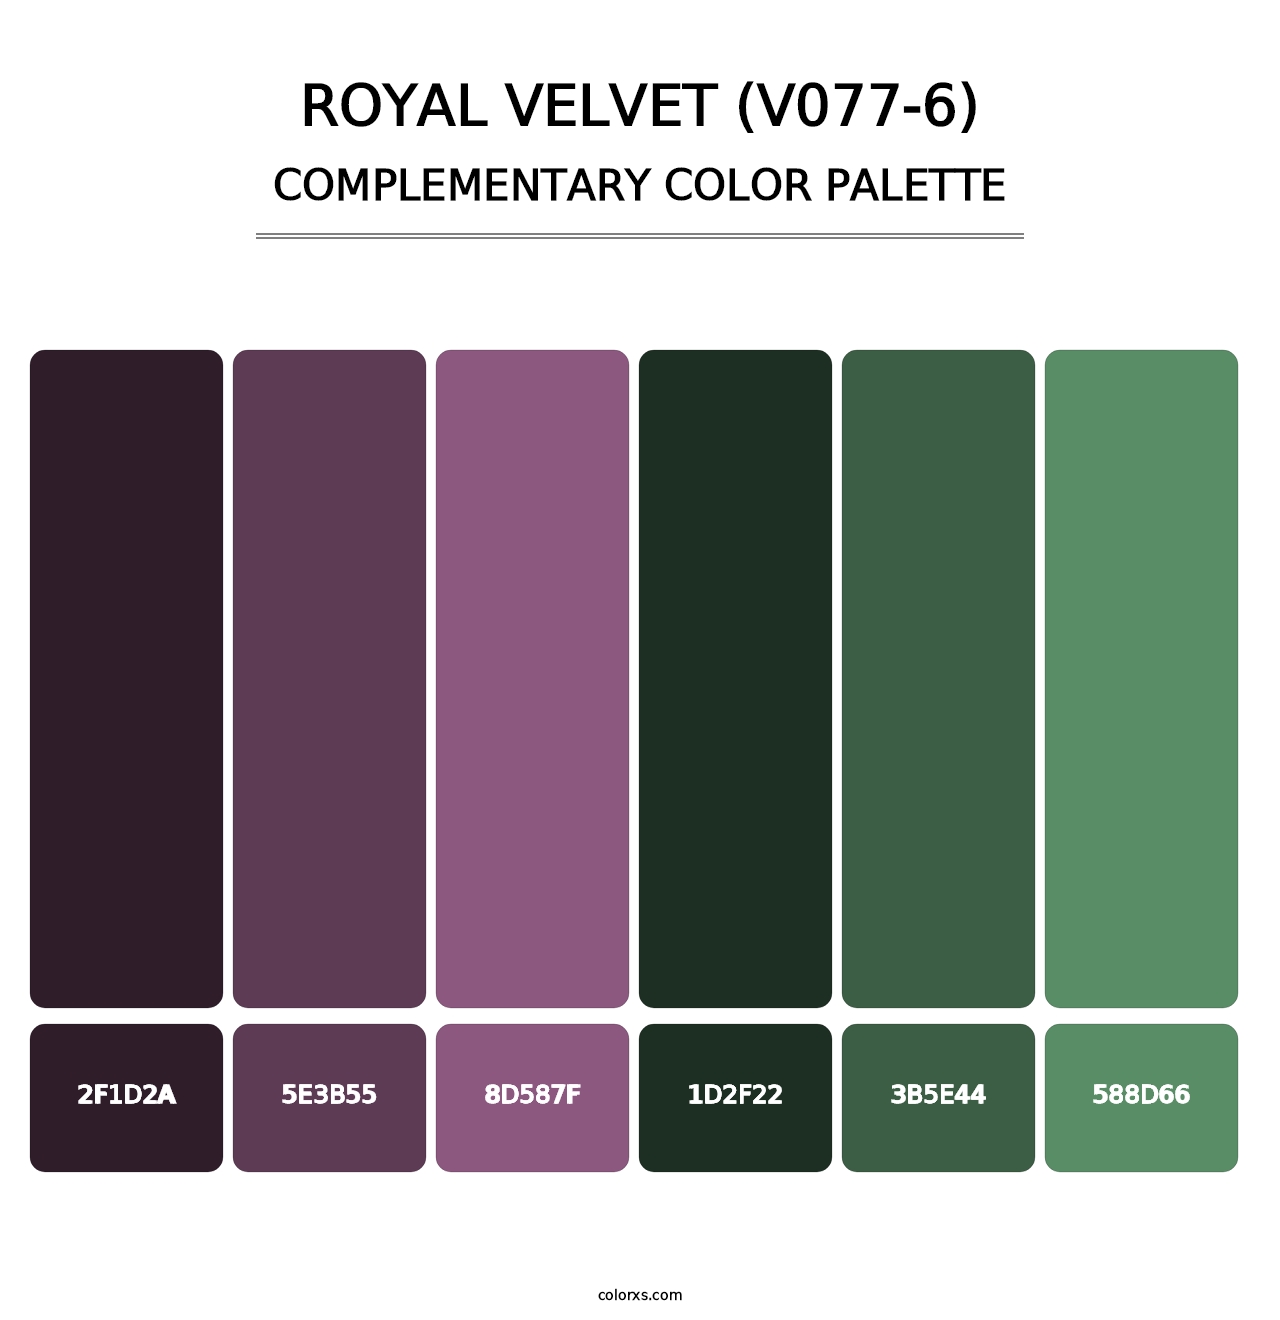 Royal Velvet (V077-6) - Complementary Color Palette